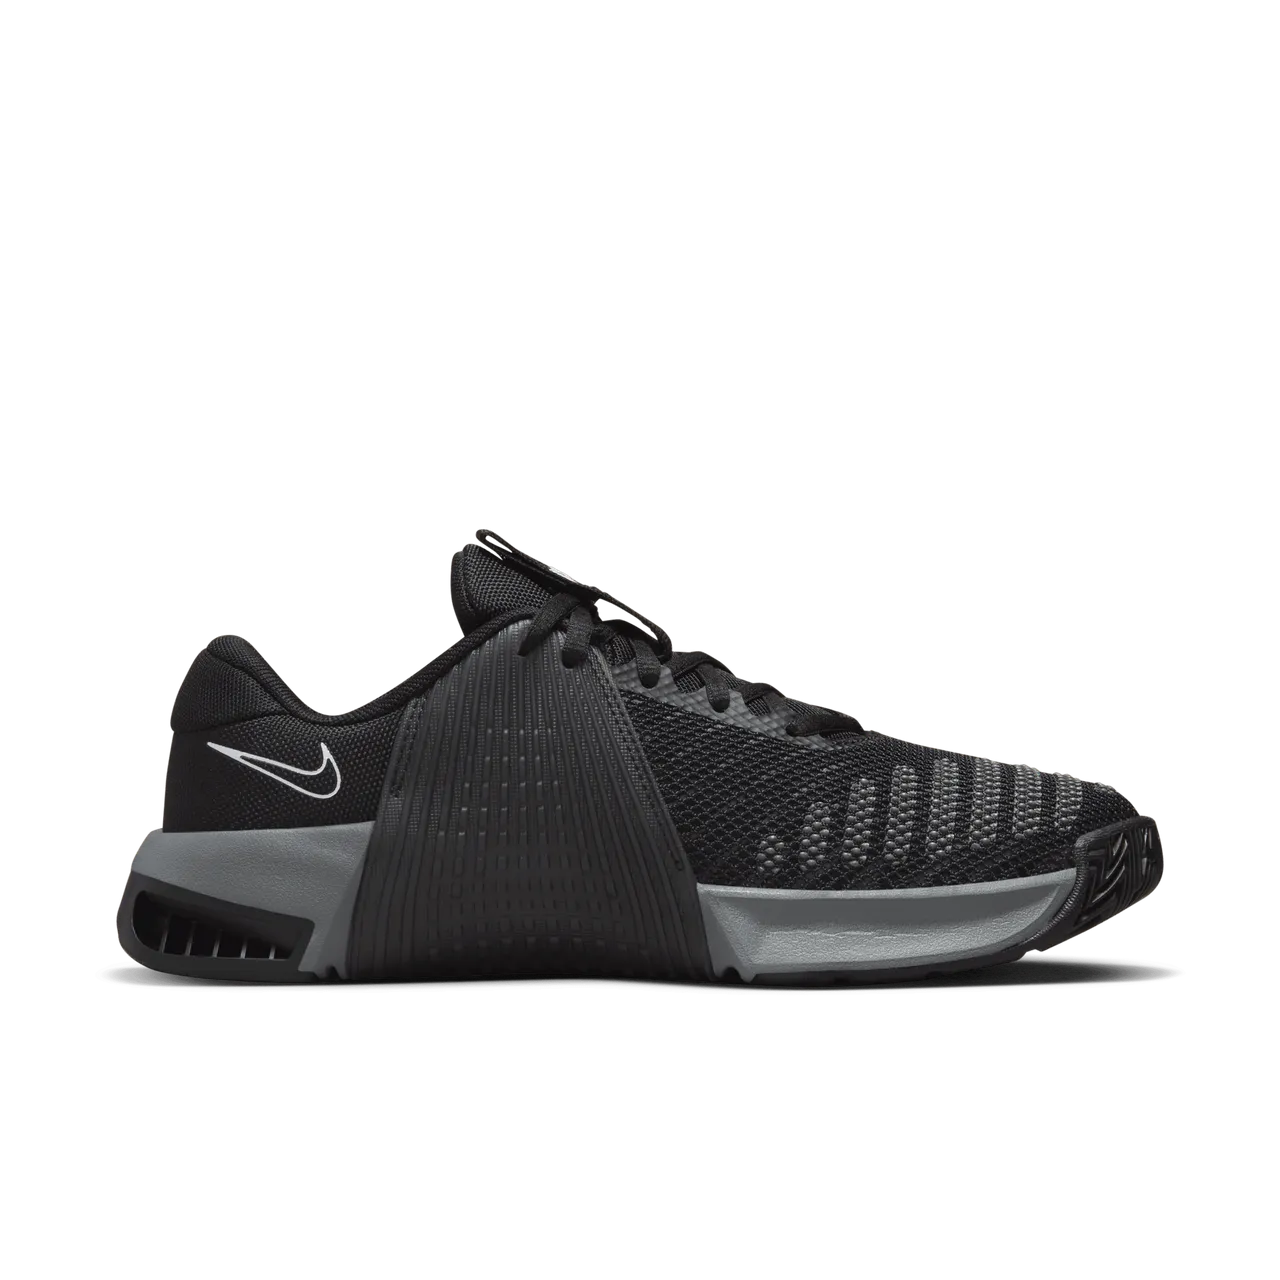 Nike Metcon 9 Women's Workout Shoes - Black